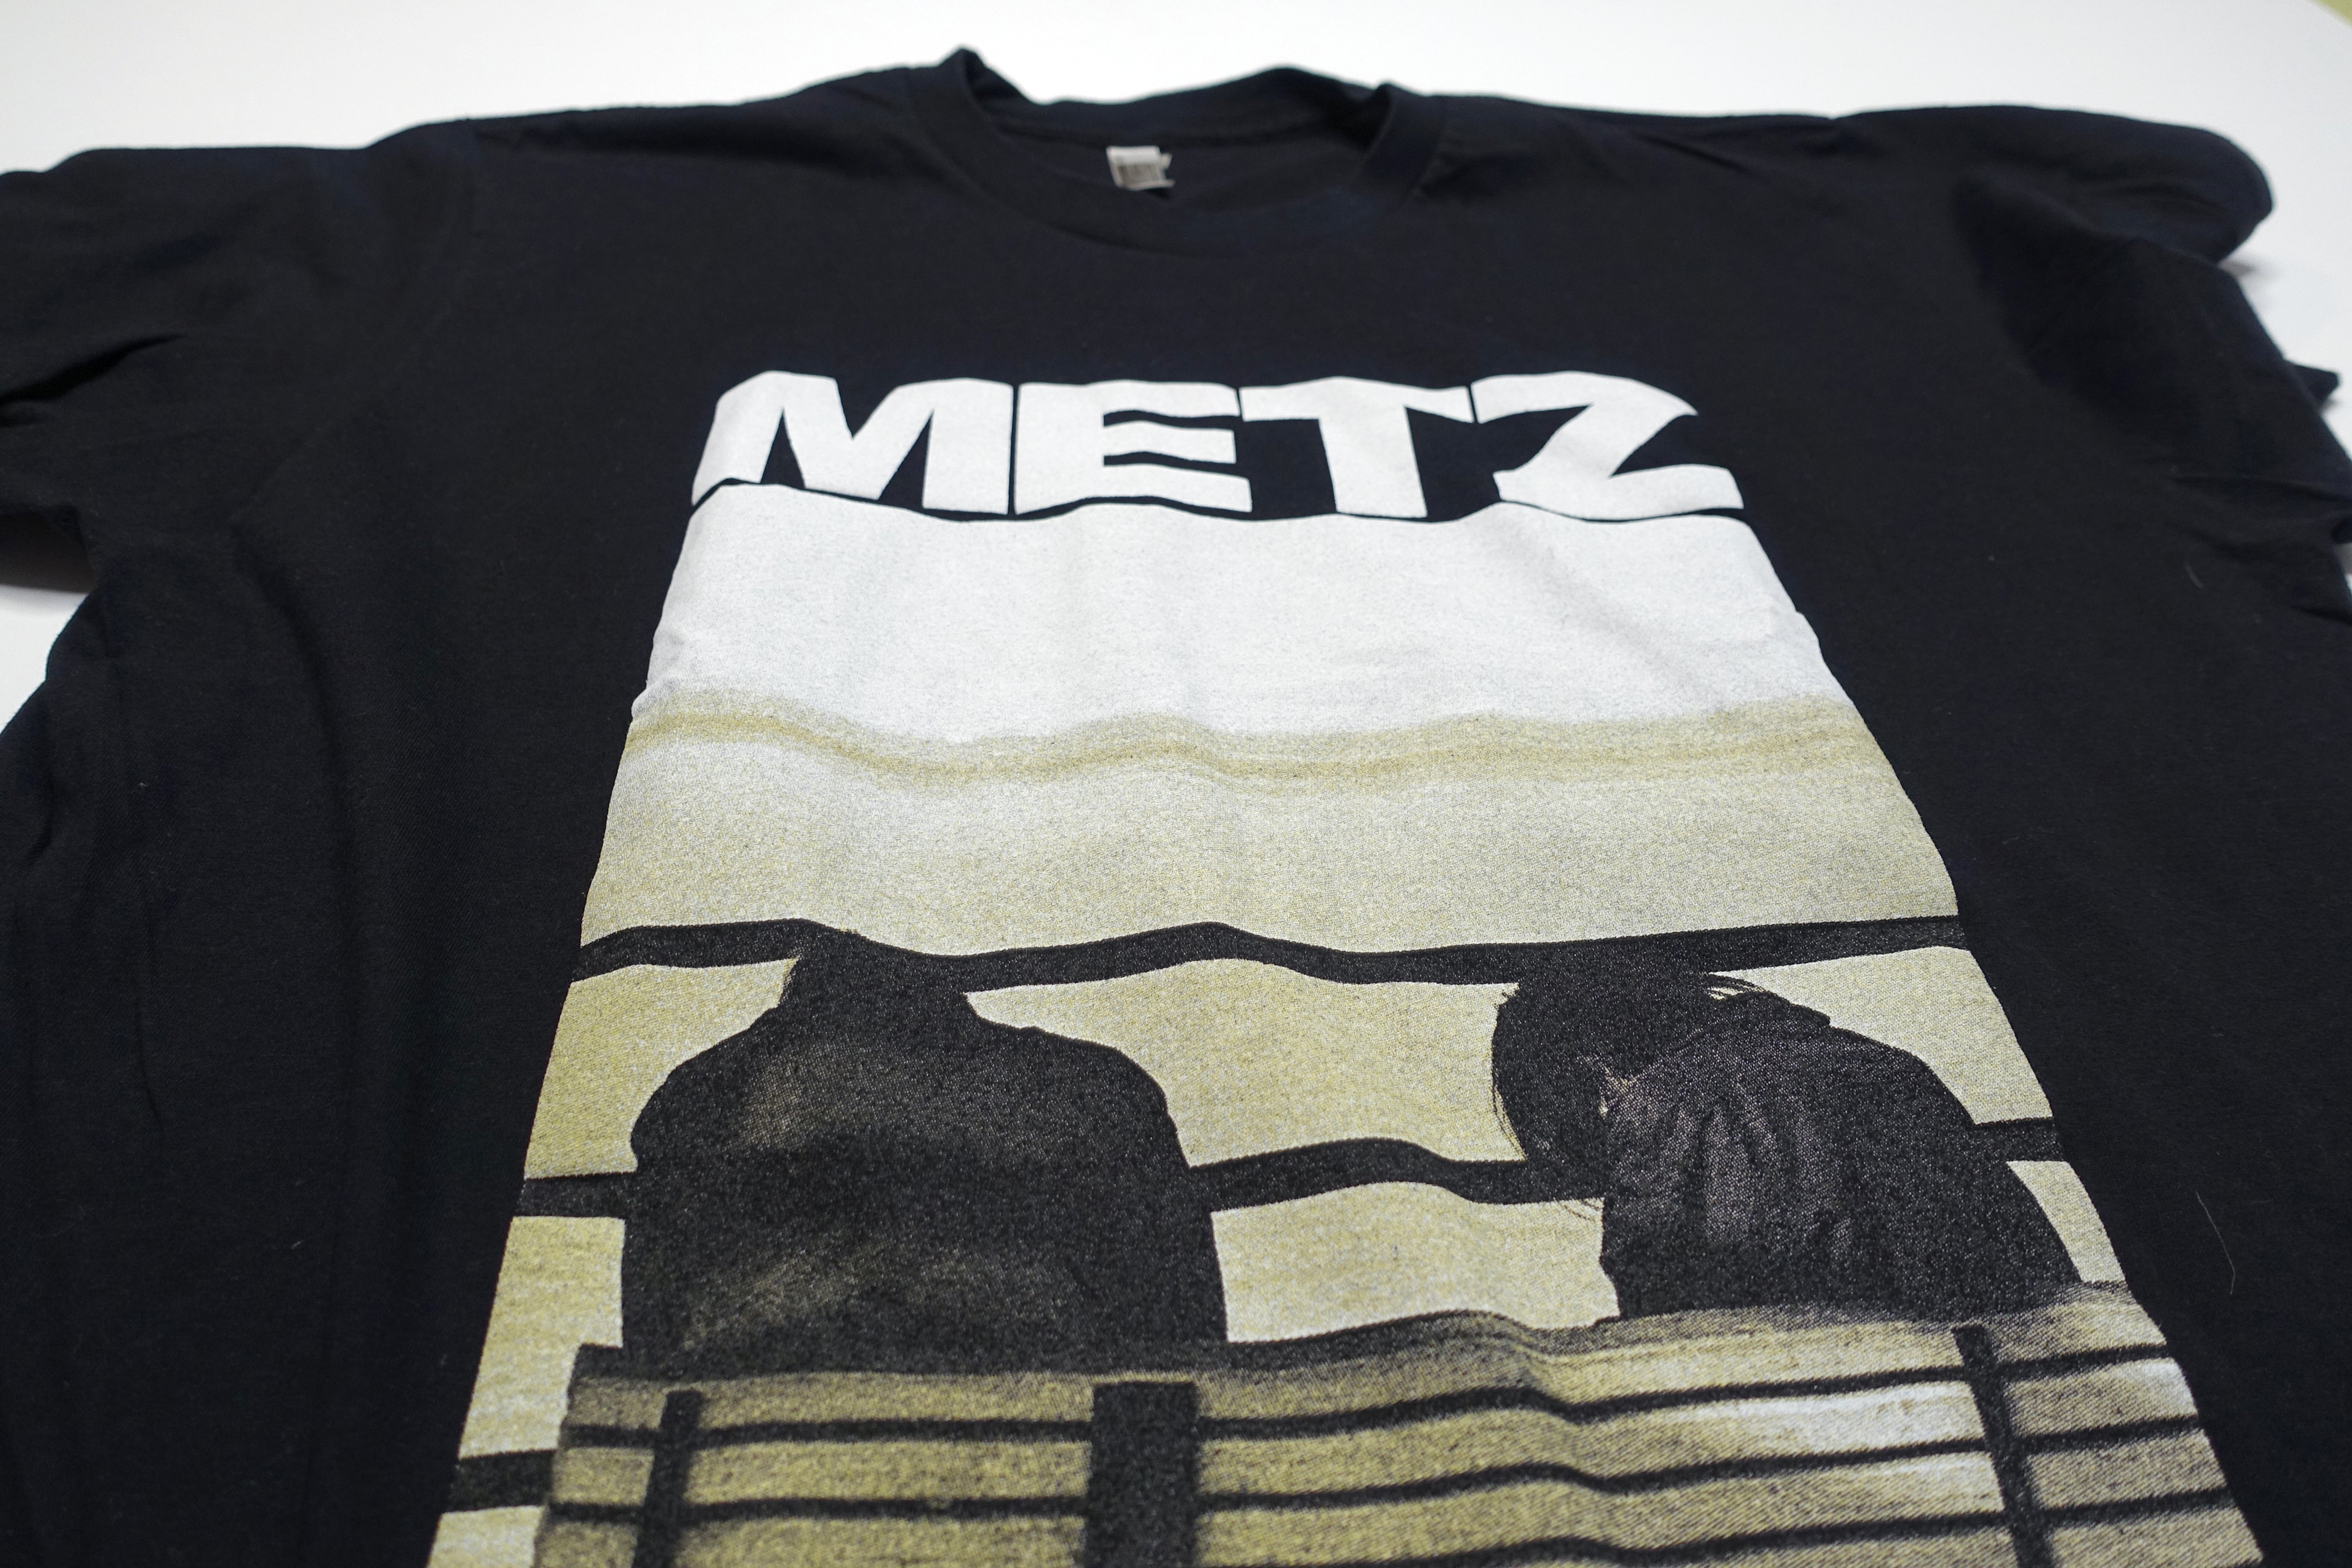 METZ - Metz II Cover 2015 Tour Shirt Size Large